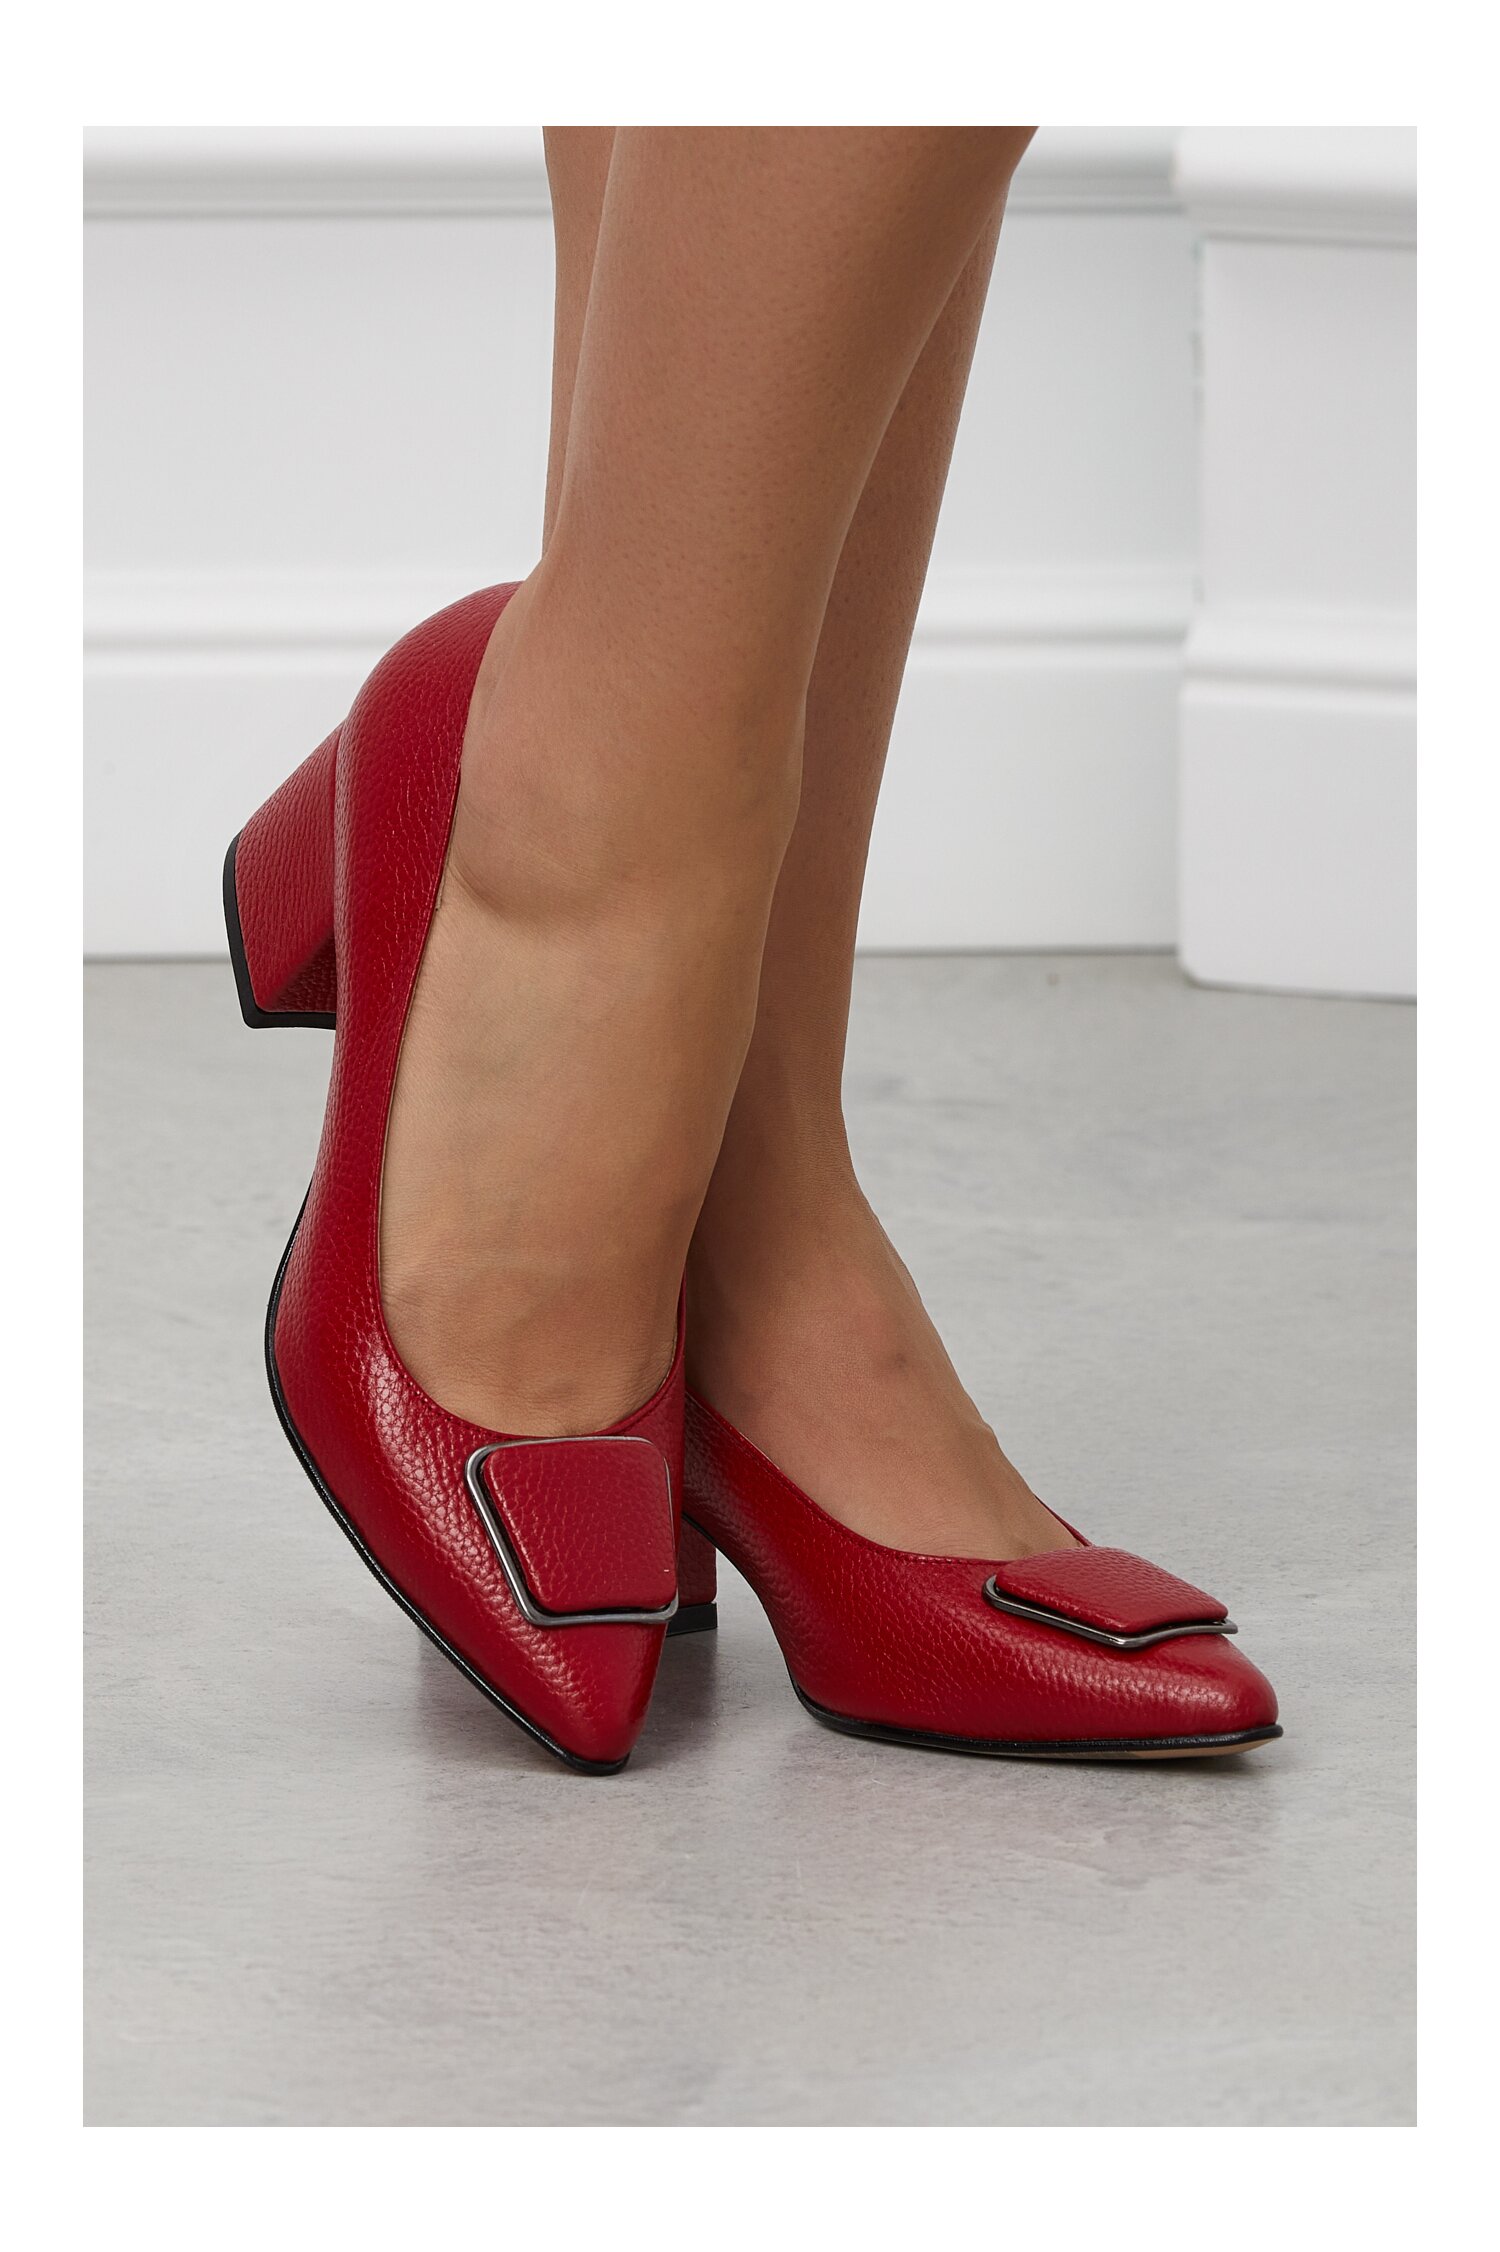 Pantofi rosu inchis cu aplicatie pe varf dyfashion.ro